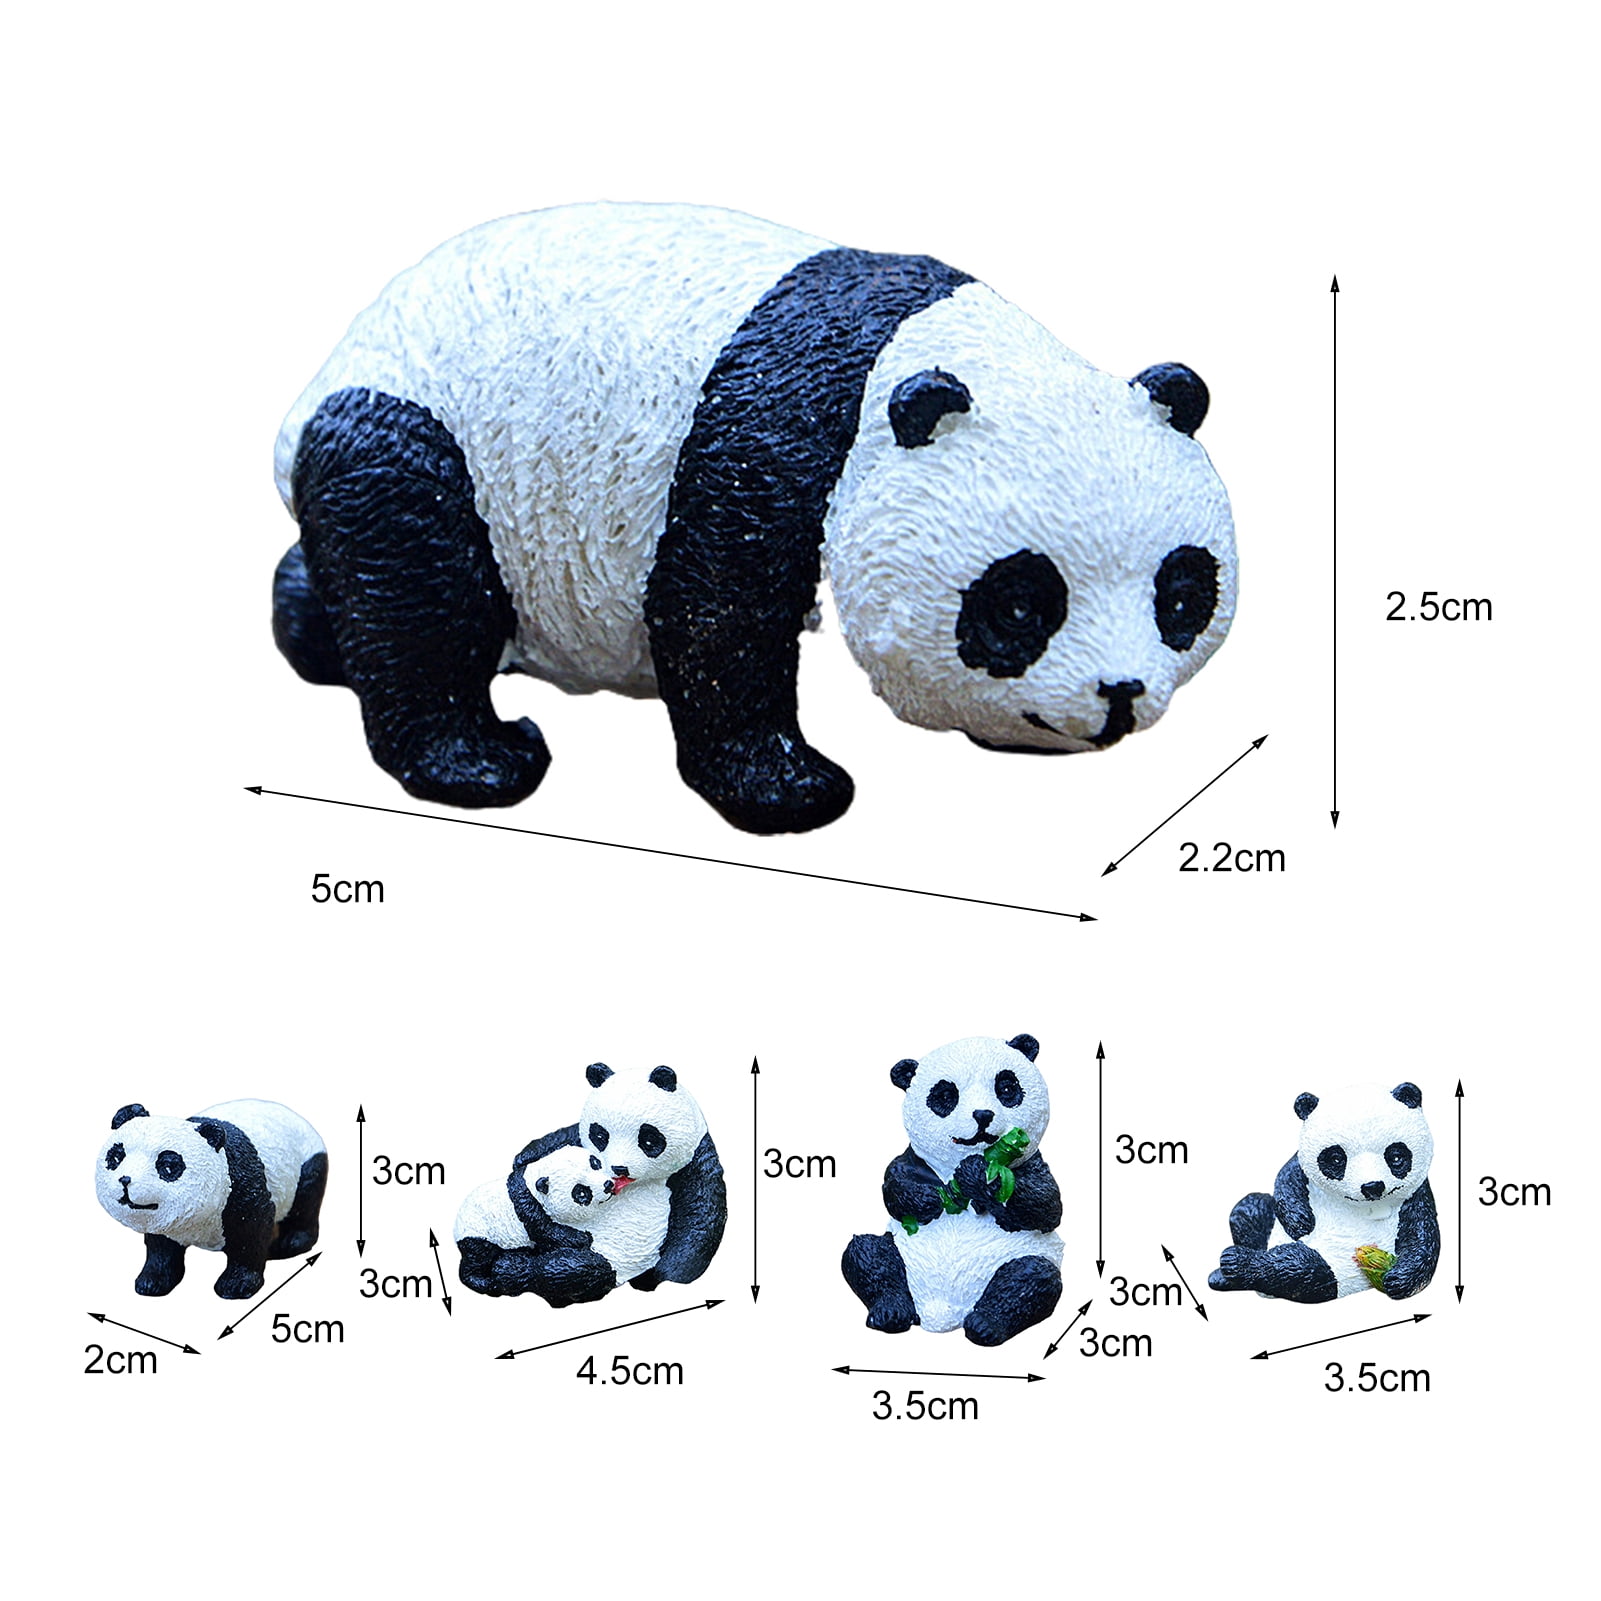 Panda-Modell Mini-Panda-Statue Pflanze Blumentöpfe Ornamente